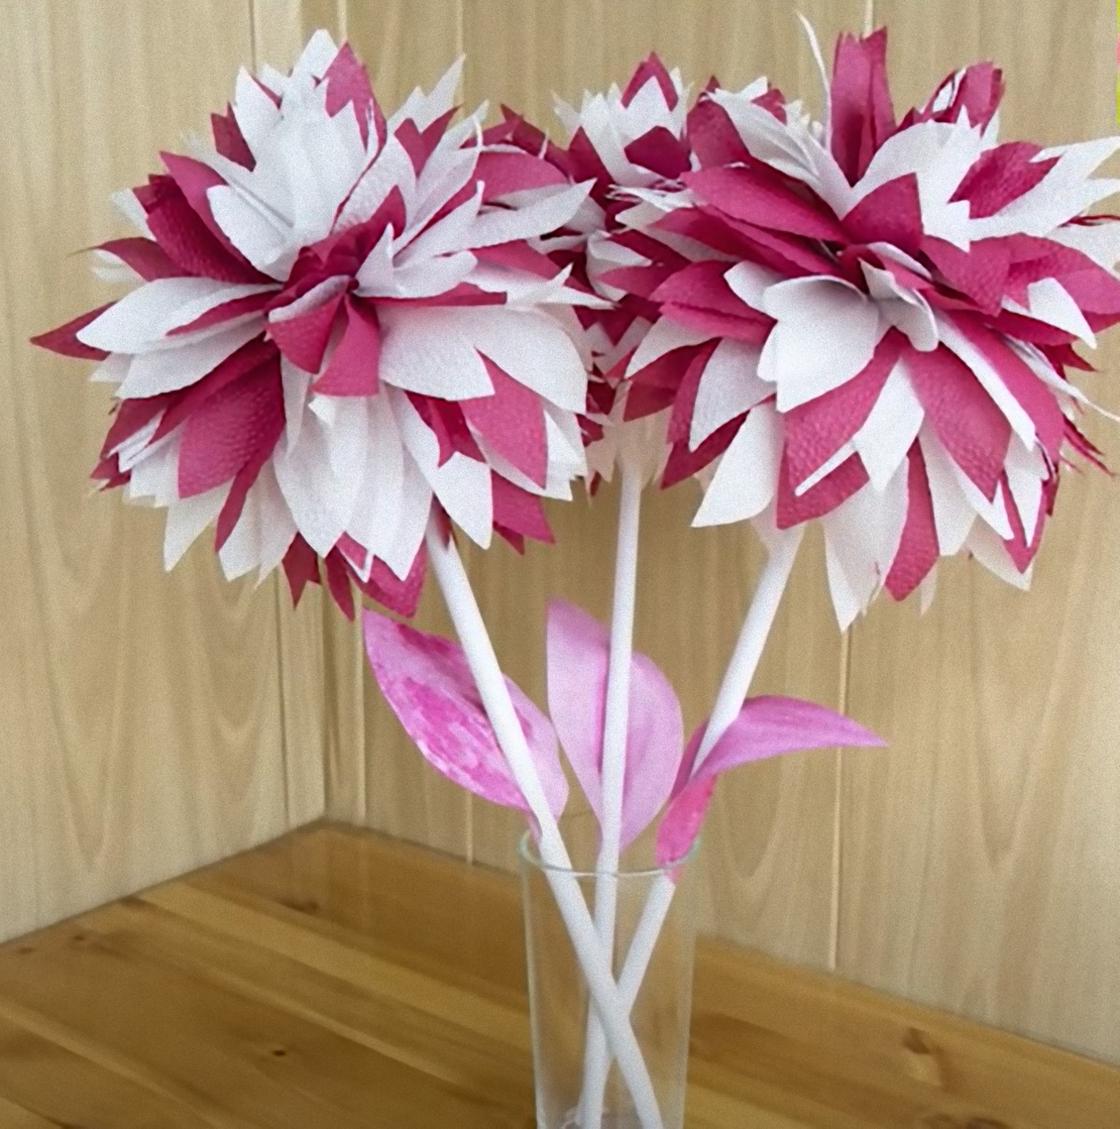 Двухцветные бумажные цветы из салфеток стоят в стекляннной вазе на столе.